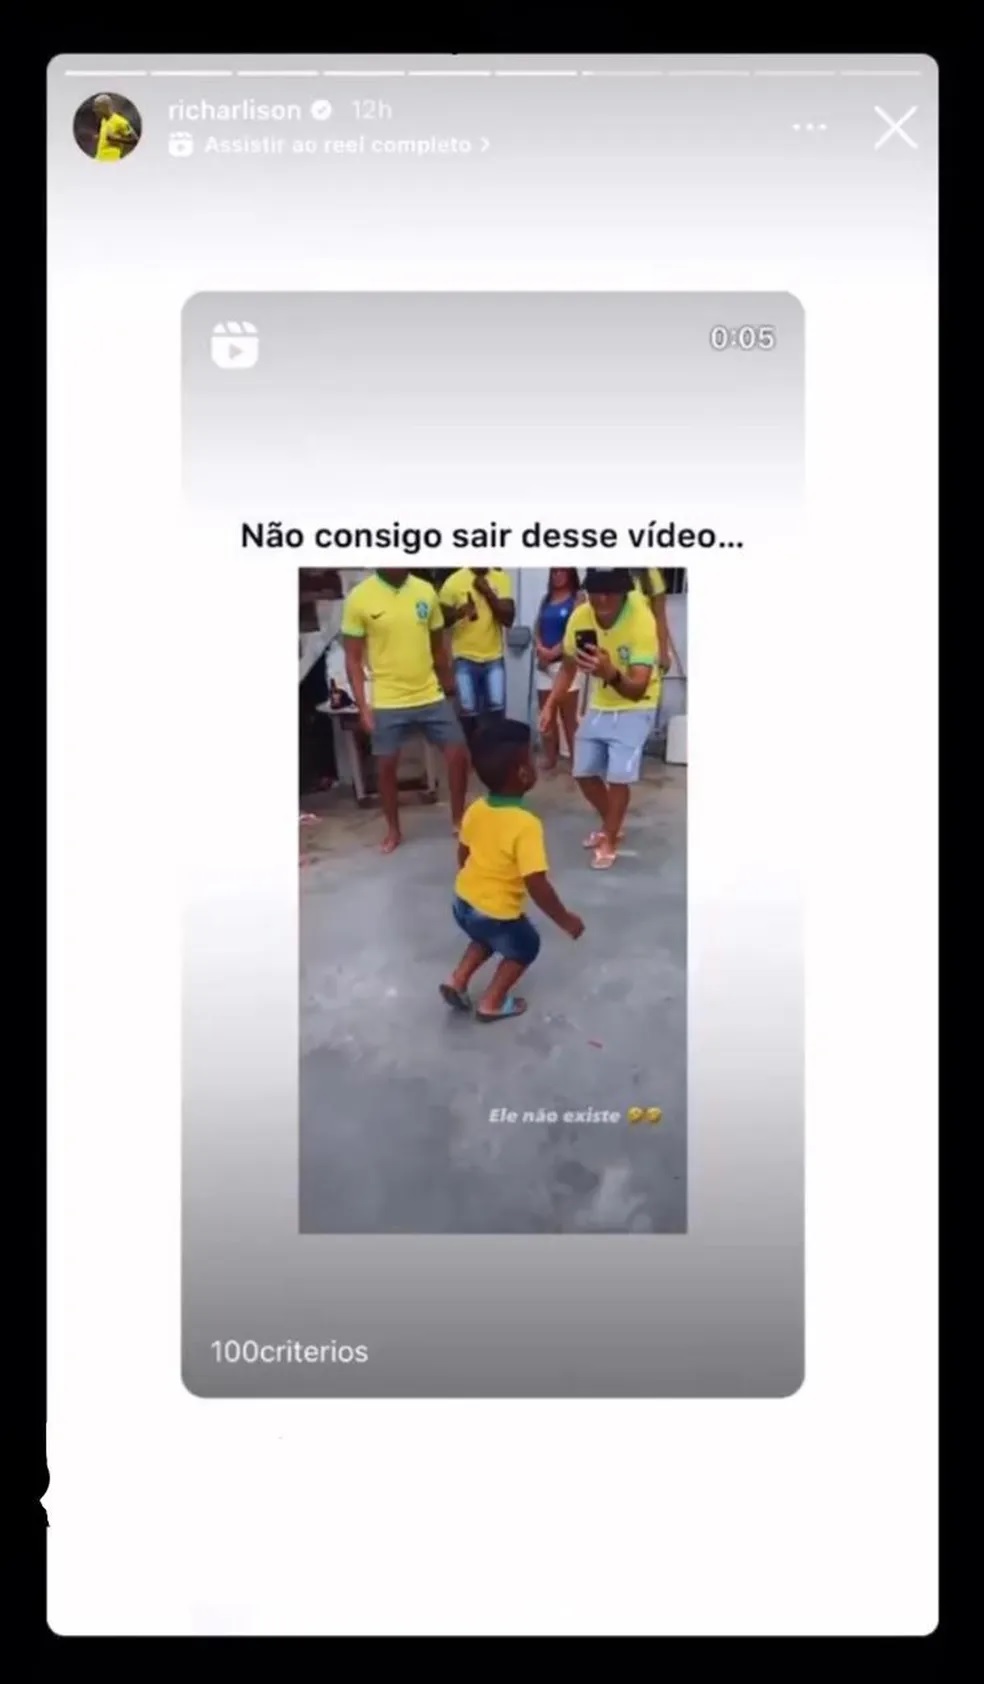 revistapazes.com - Menino de 3 anos viraliza fazendo a "Dança do Pombo" e imitando o jogador Richarlison